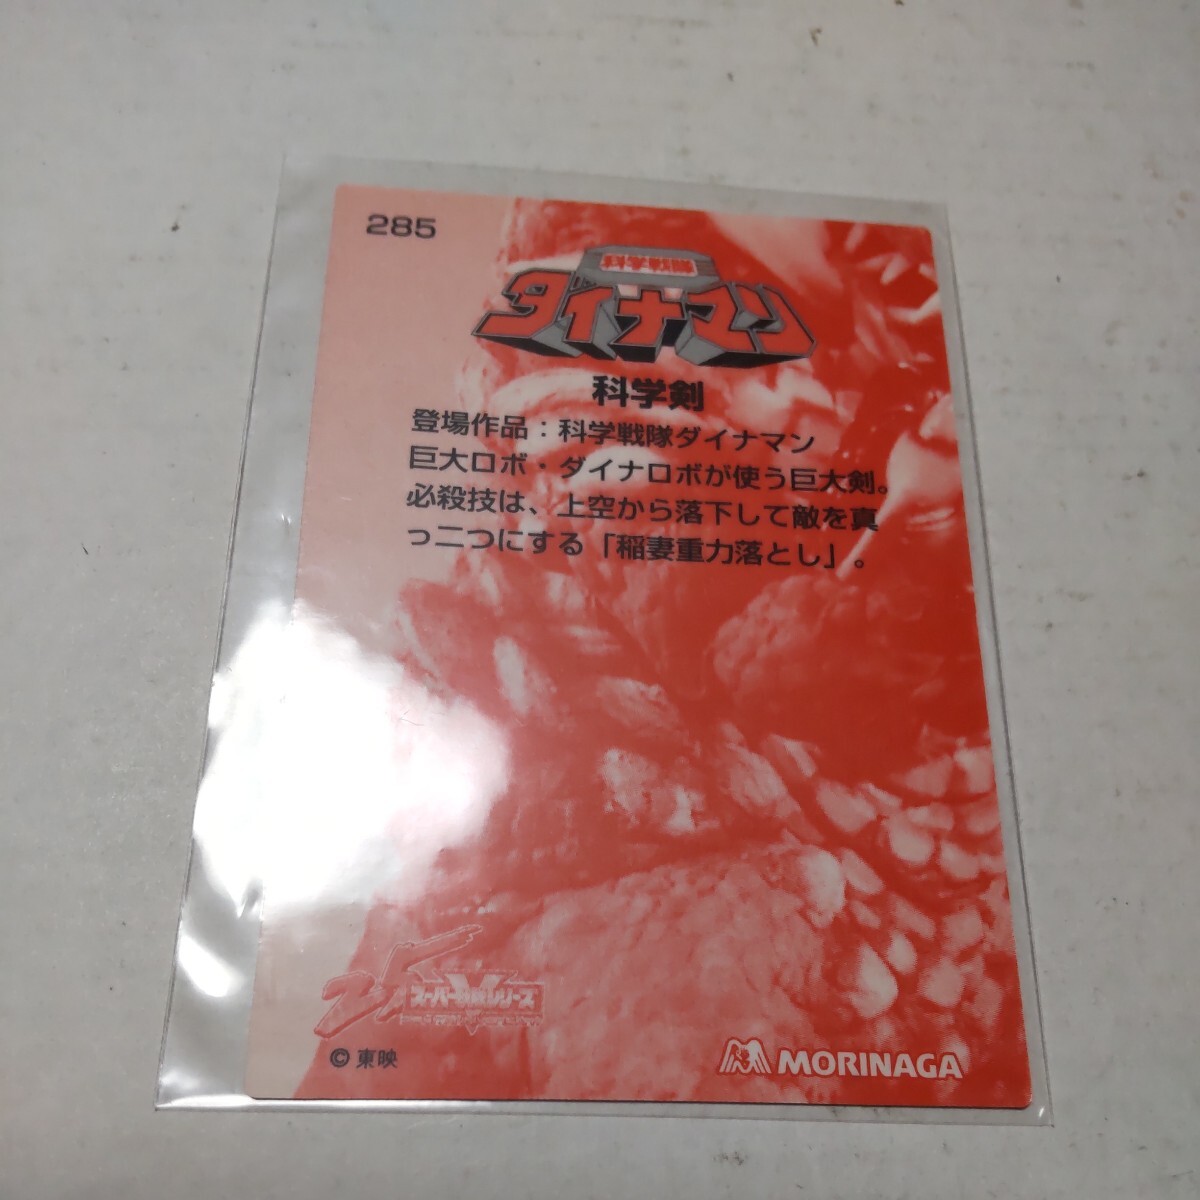 森永スーパー戦隊ウエハース25th カード 285 科学剣_画像2